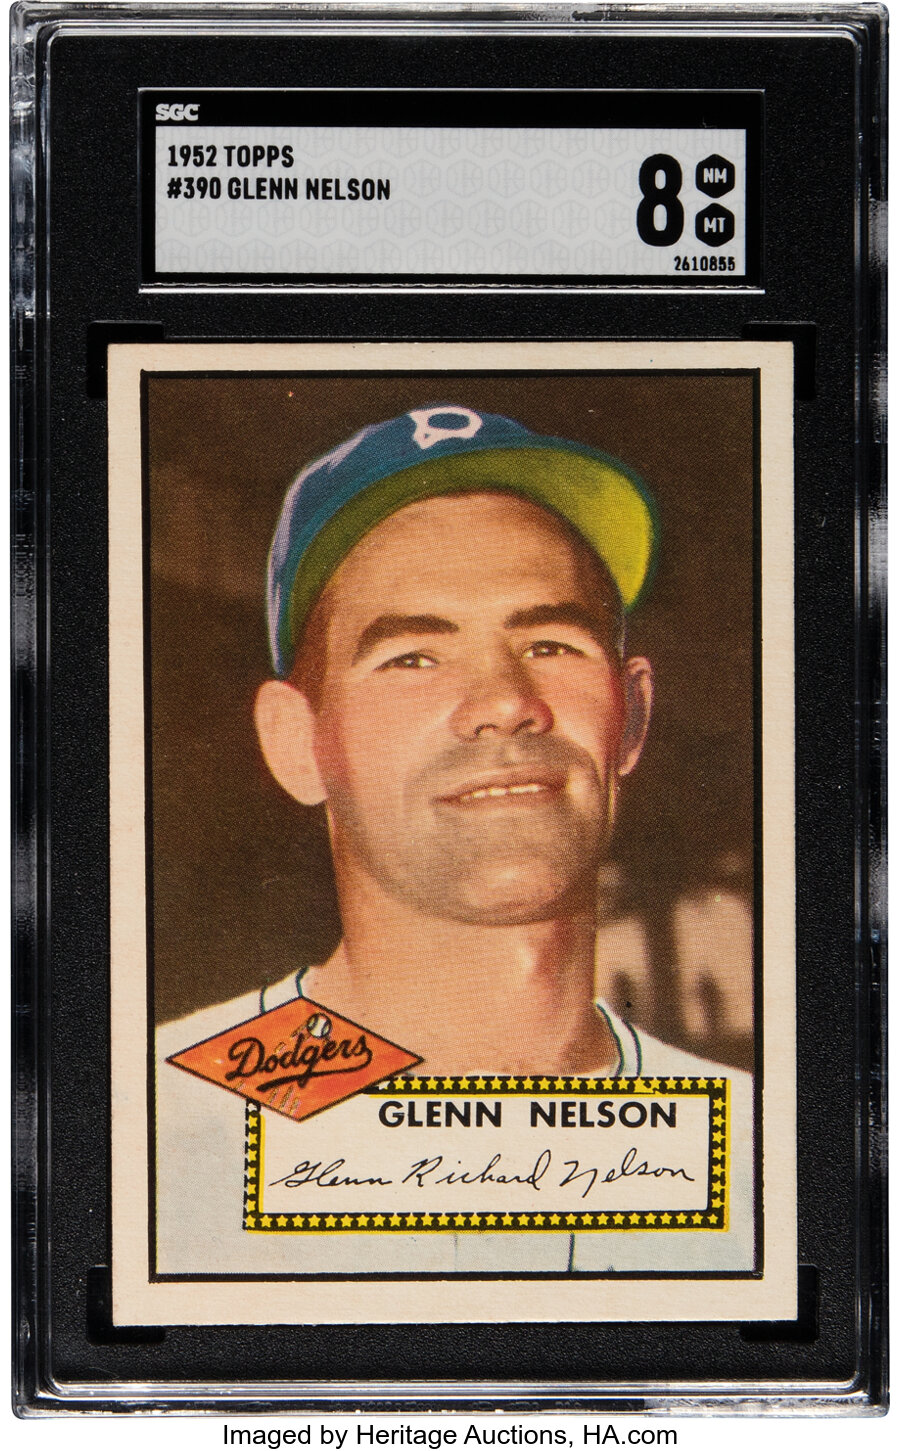 1952 Topps Glenn Nelson Rookie #390 SGC NM-MT 8